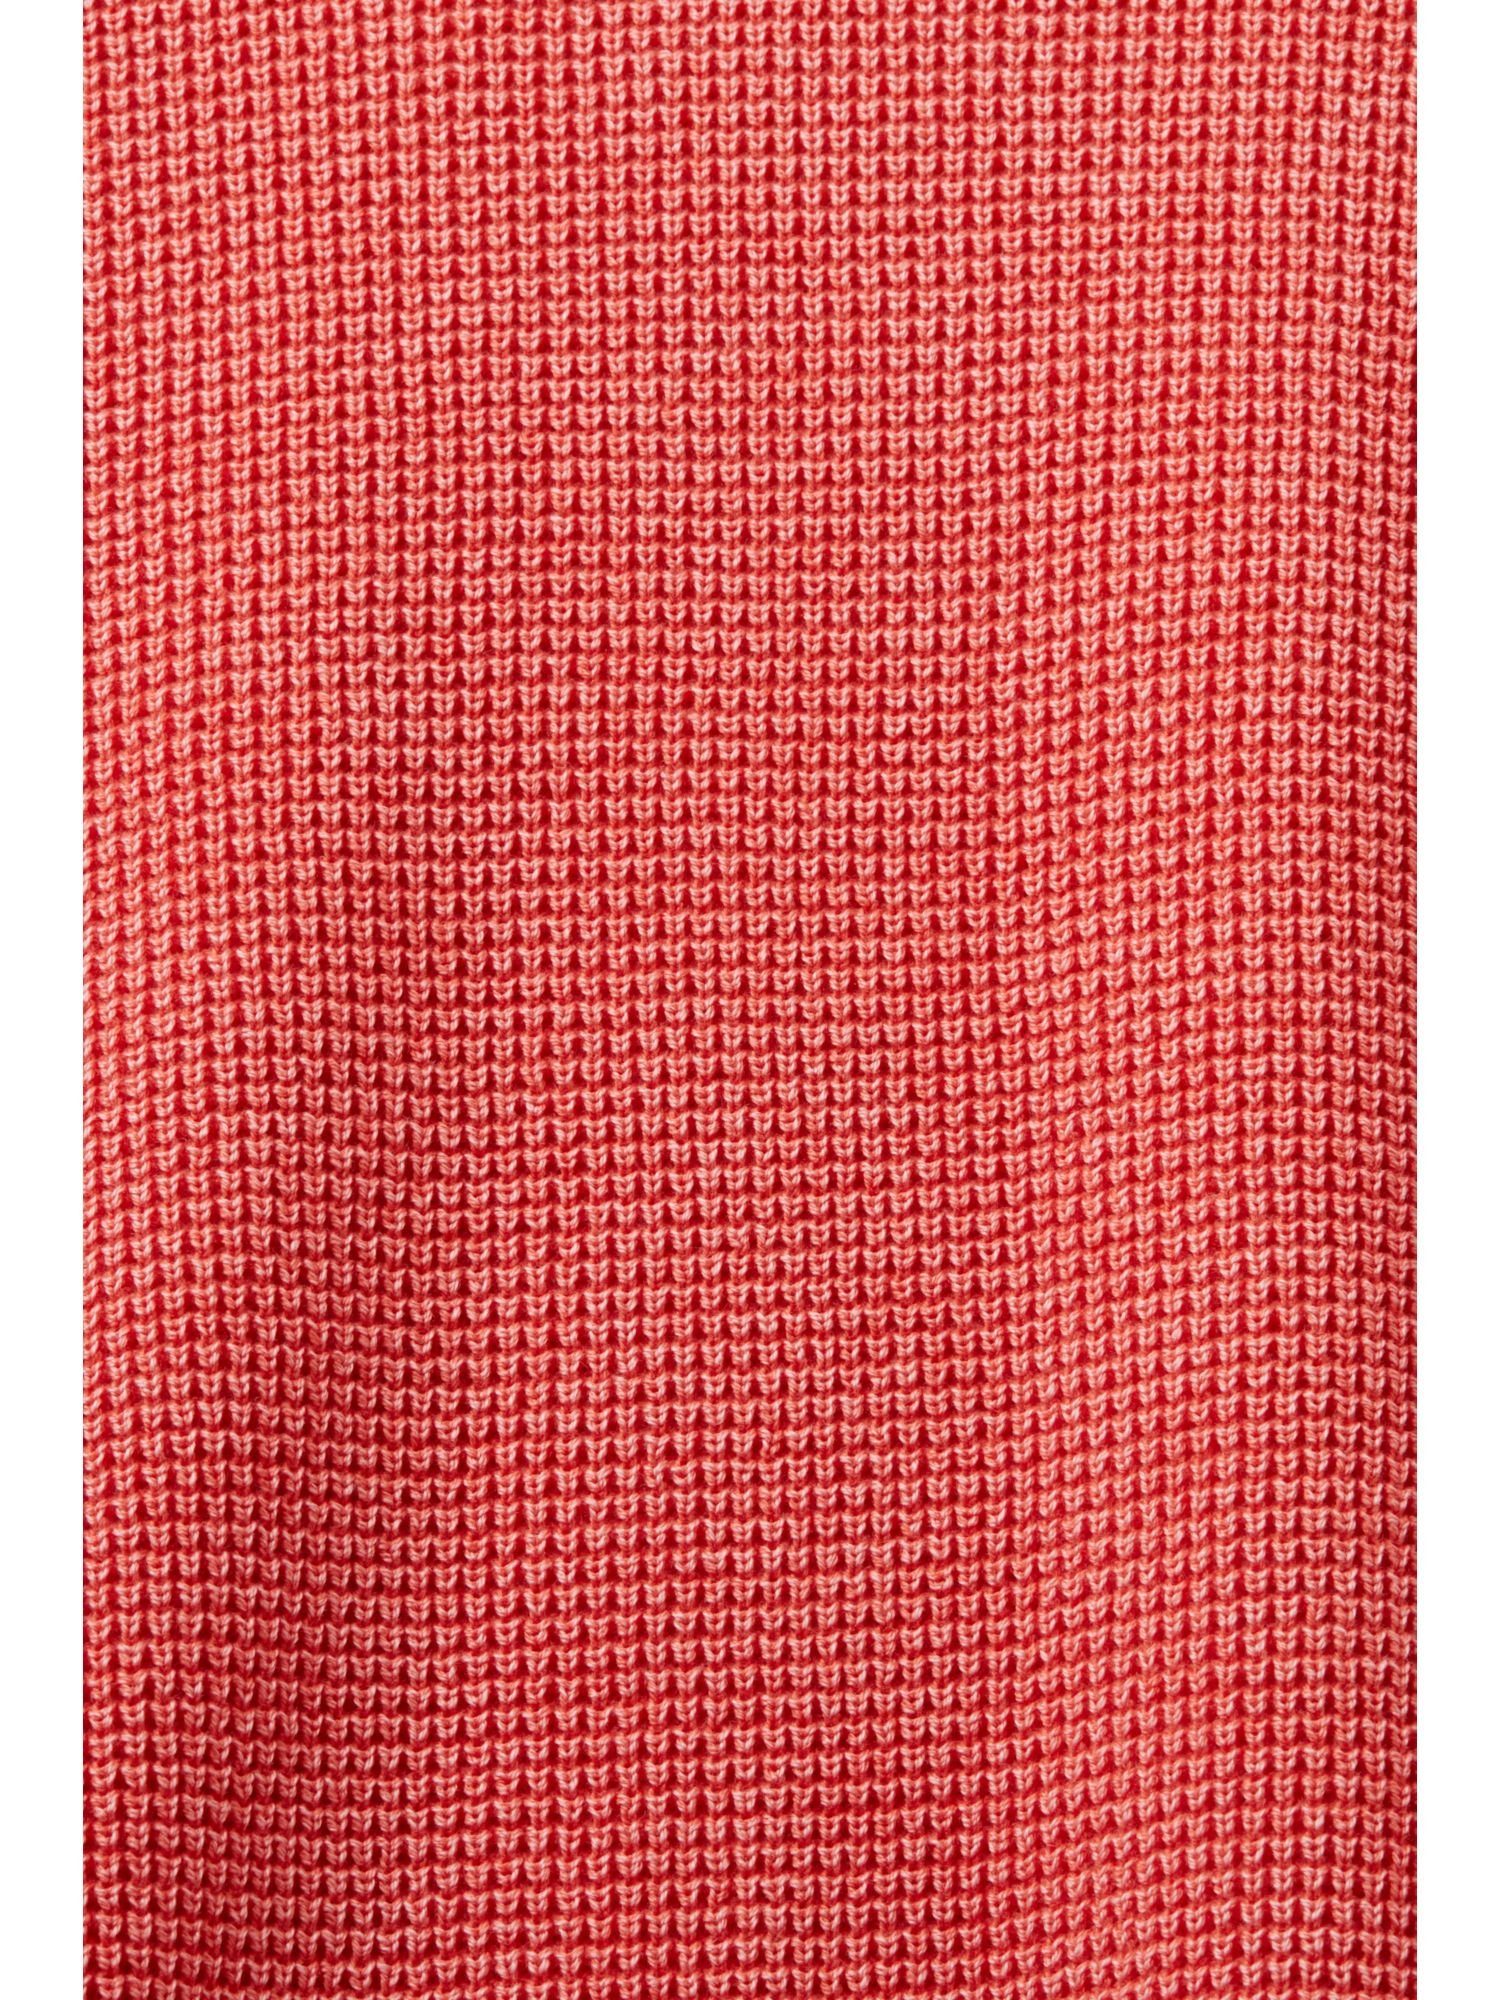 mit Pullover Baumwolle CORAL 100 % Esprit Rundhalspullover Rundhalsausschnitt, RED